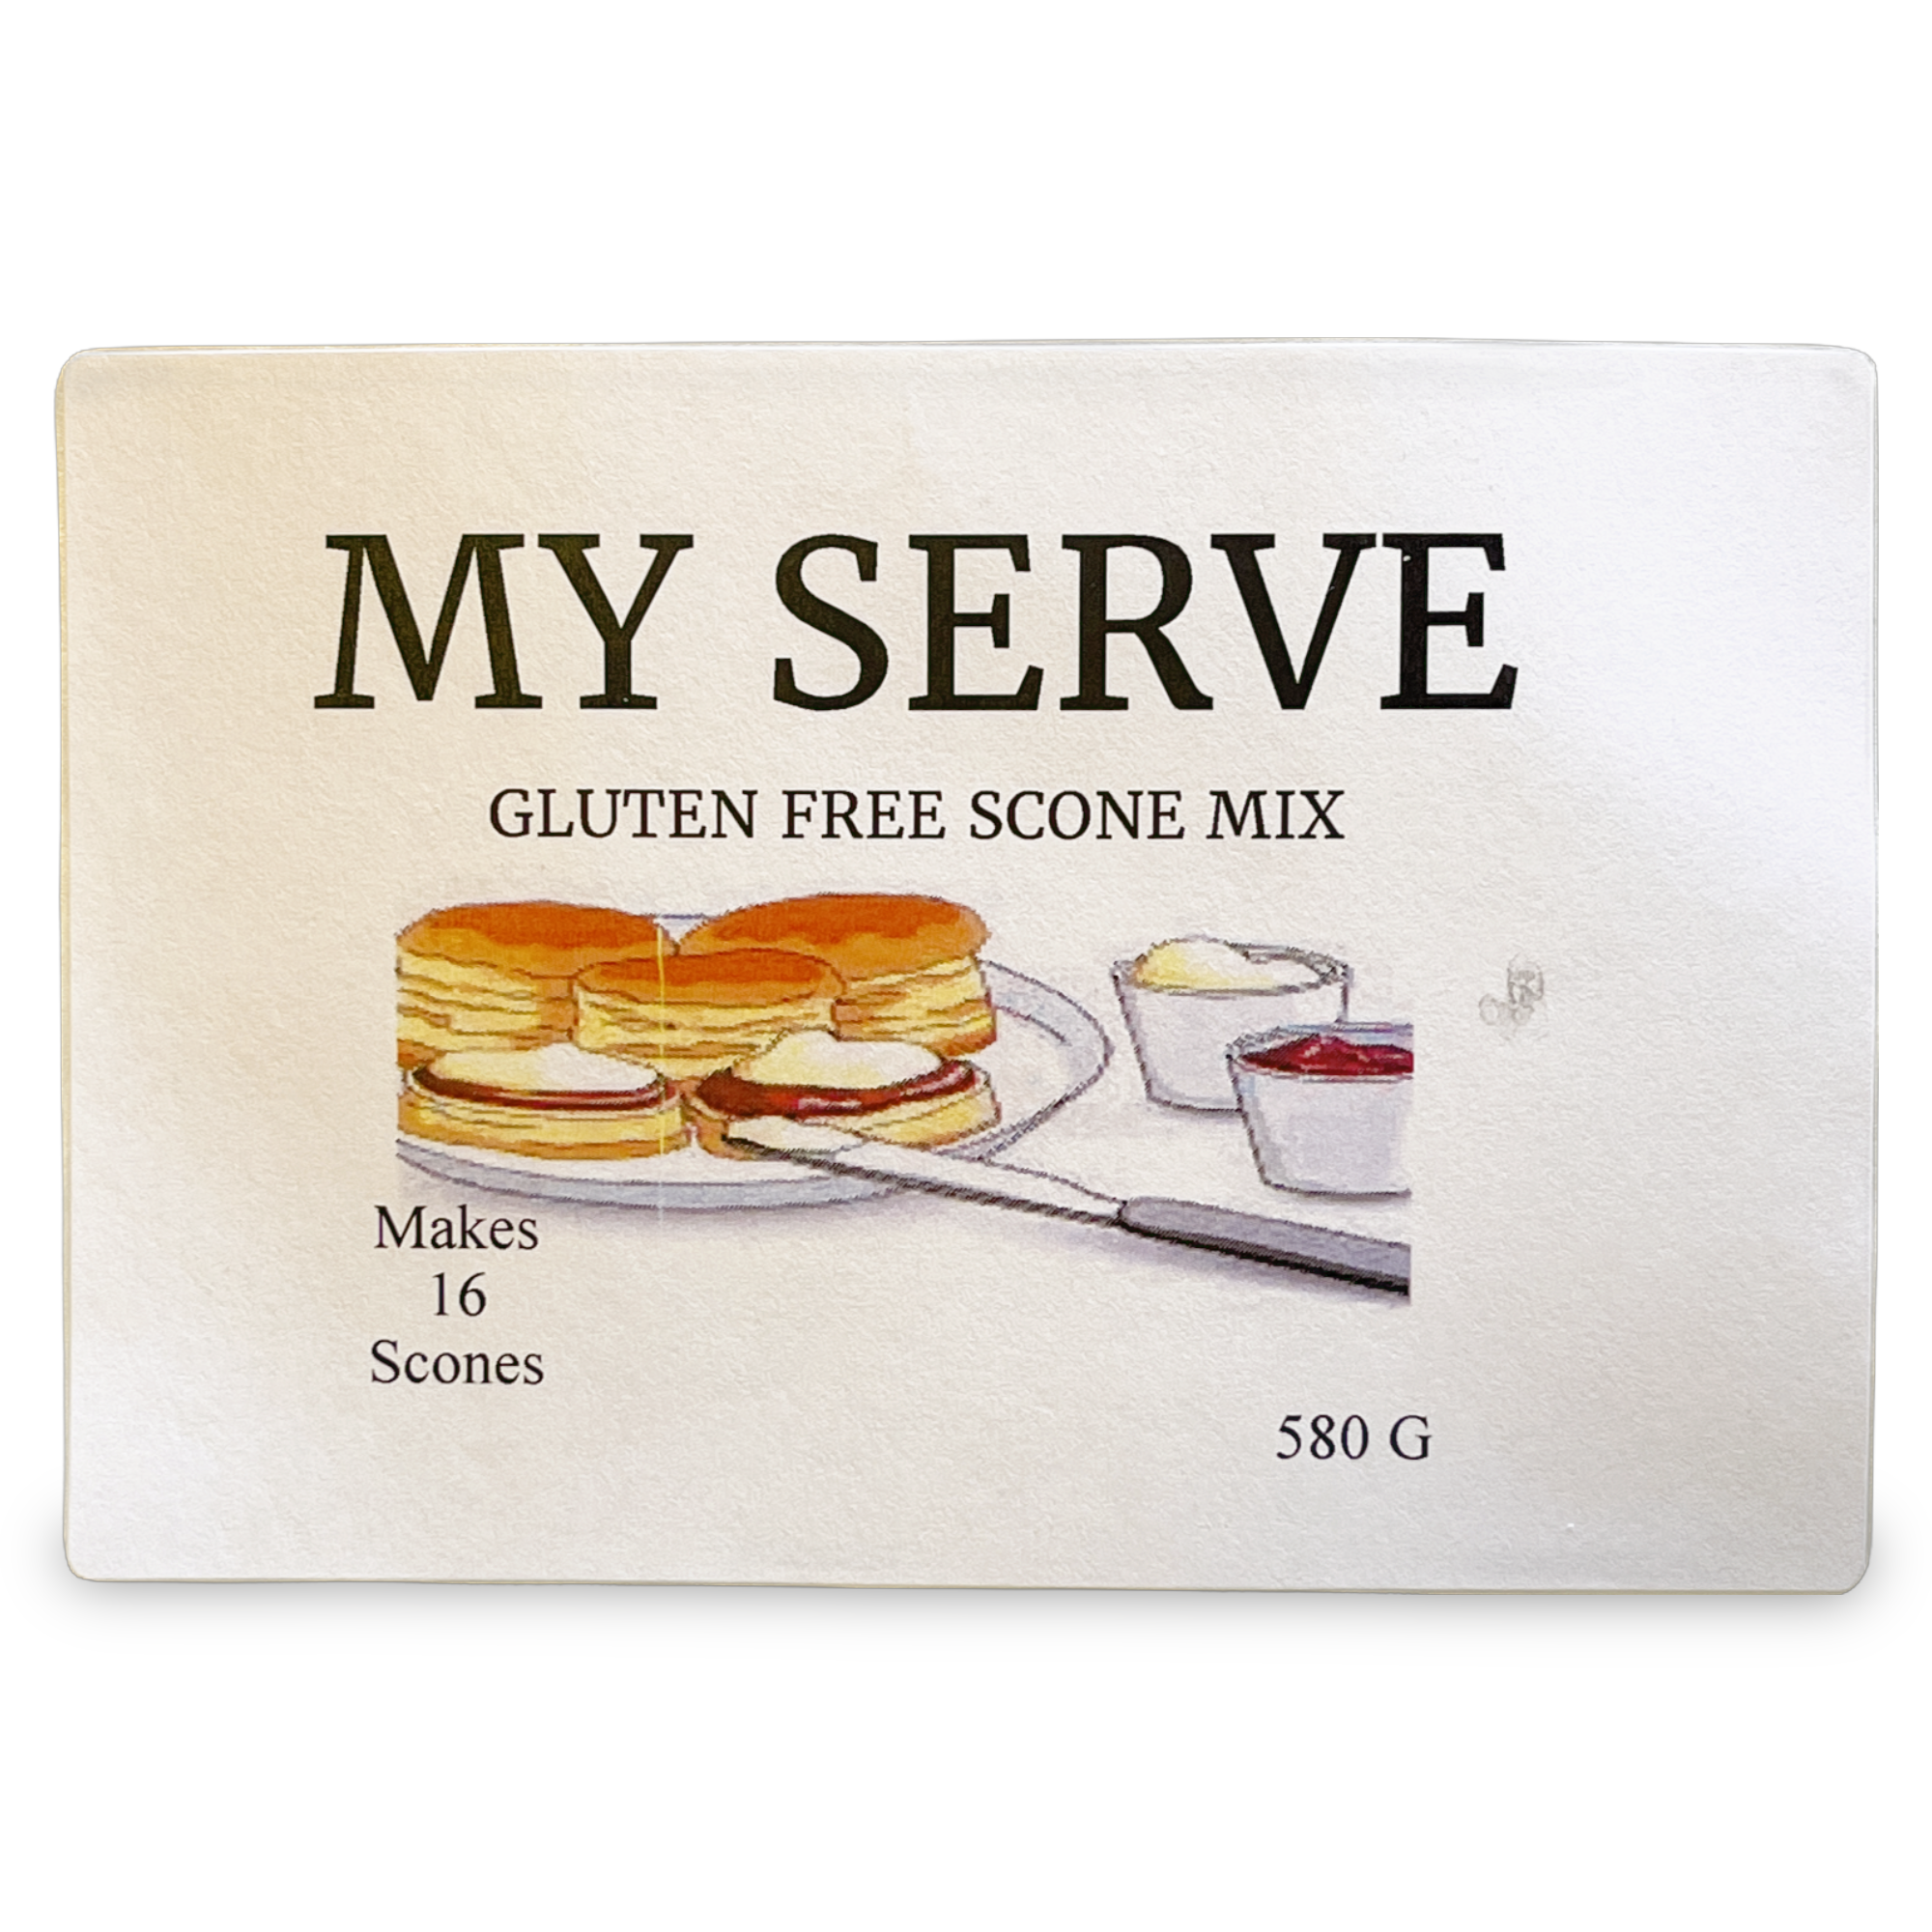 My Serve Gluten-free Scone Mix